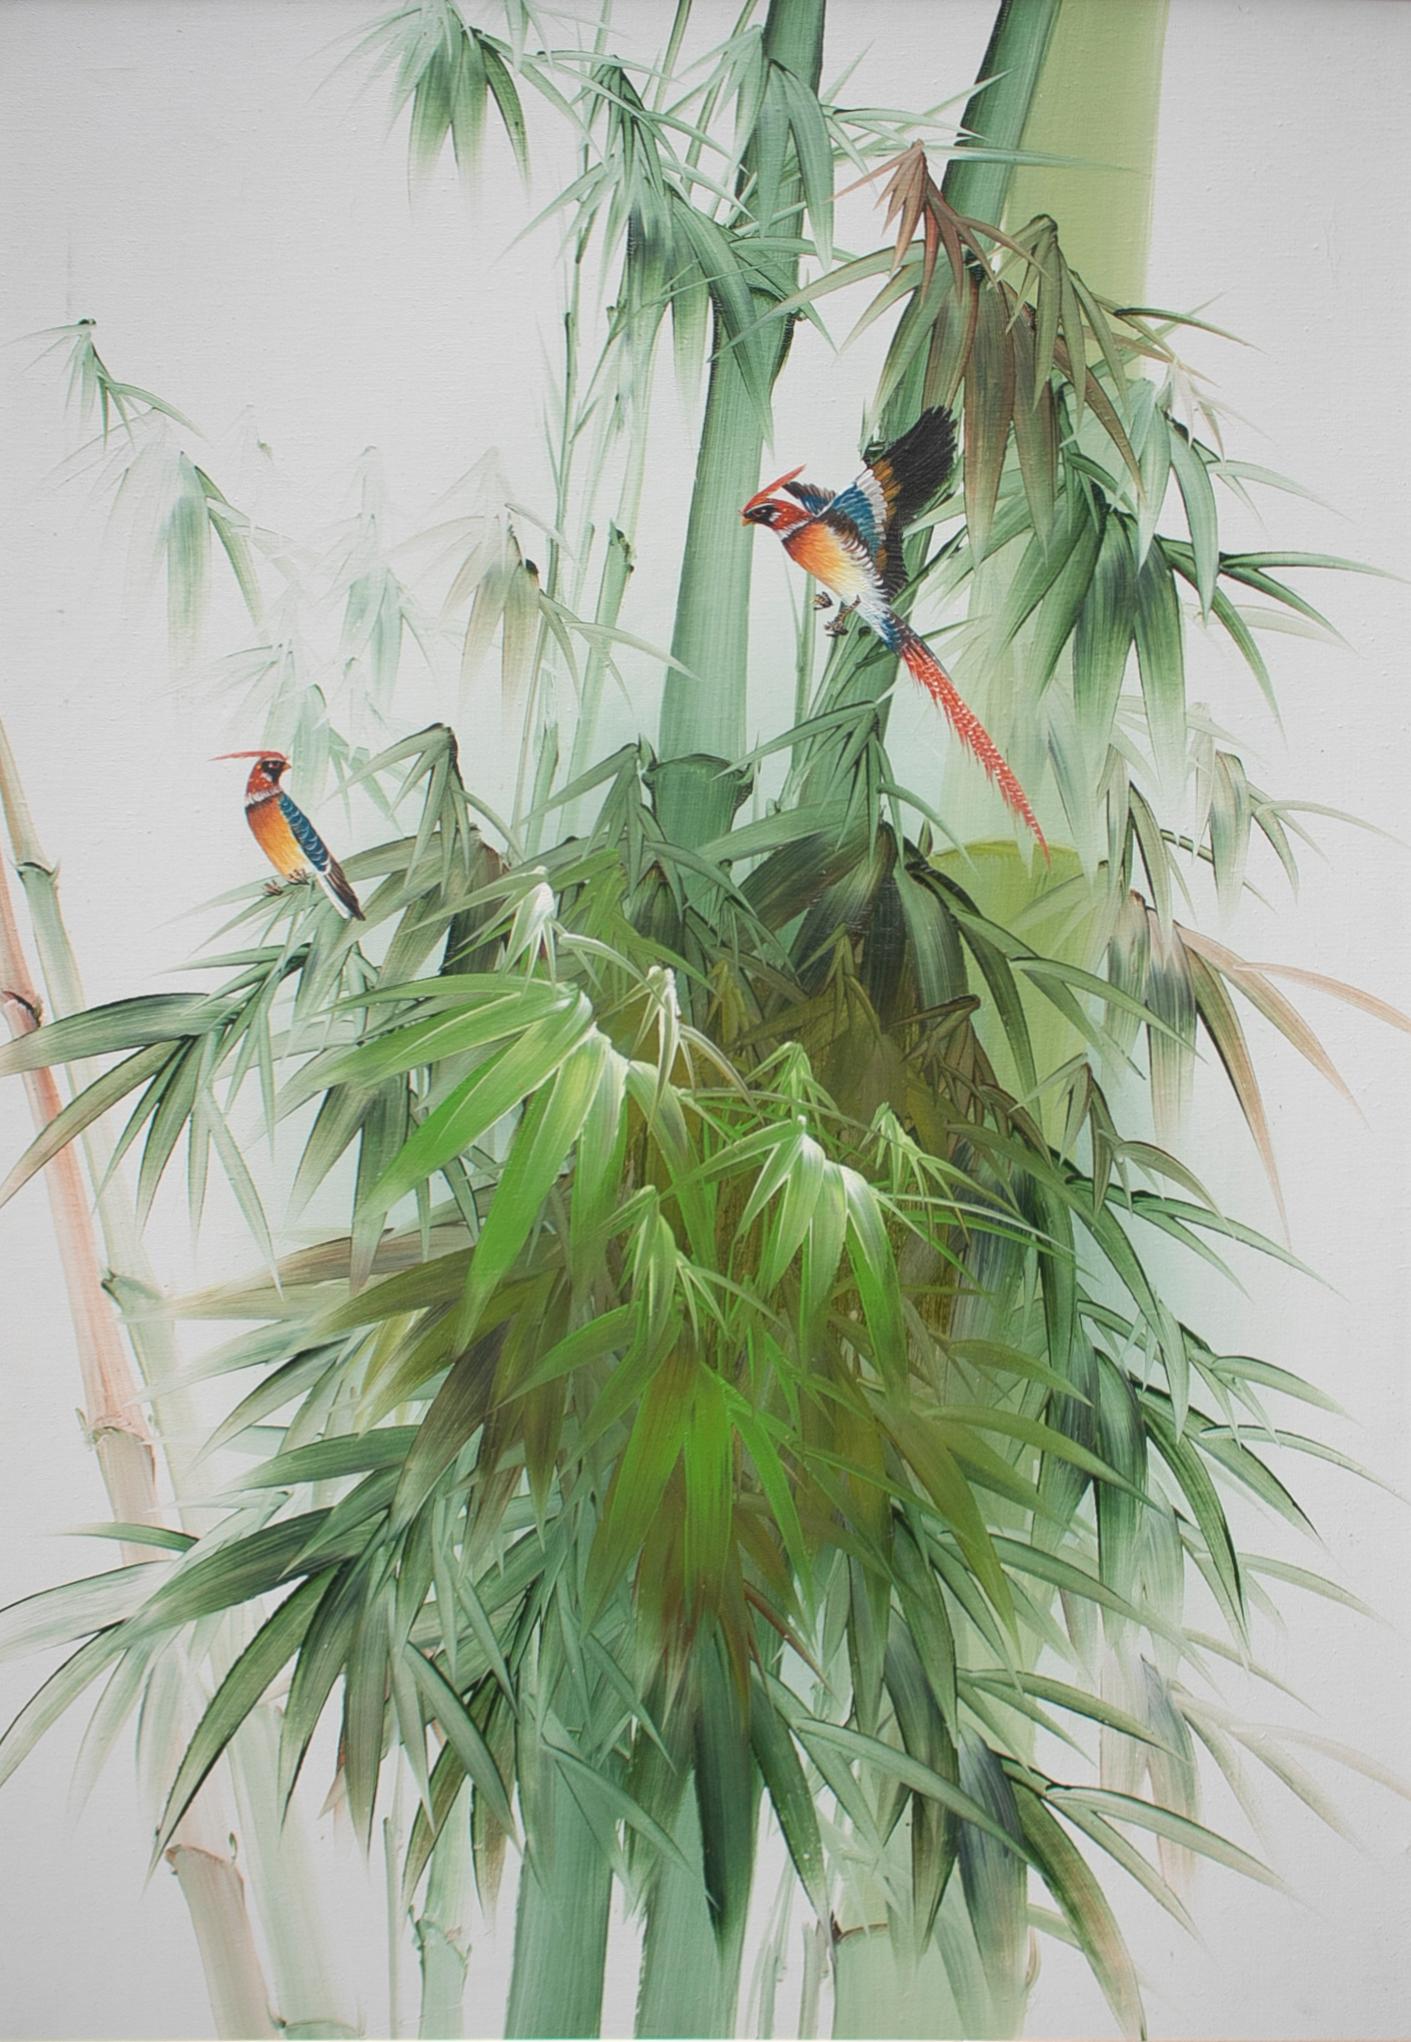 tableaux d'oiseaux espagnols des années 1980, huile sur toile avec cadre en bambou. 

Mesures du cadre : 96 x 66 x 2,5 cm.